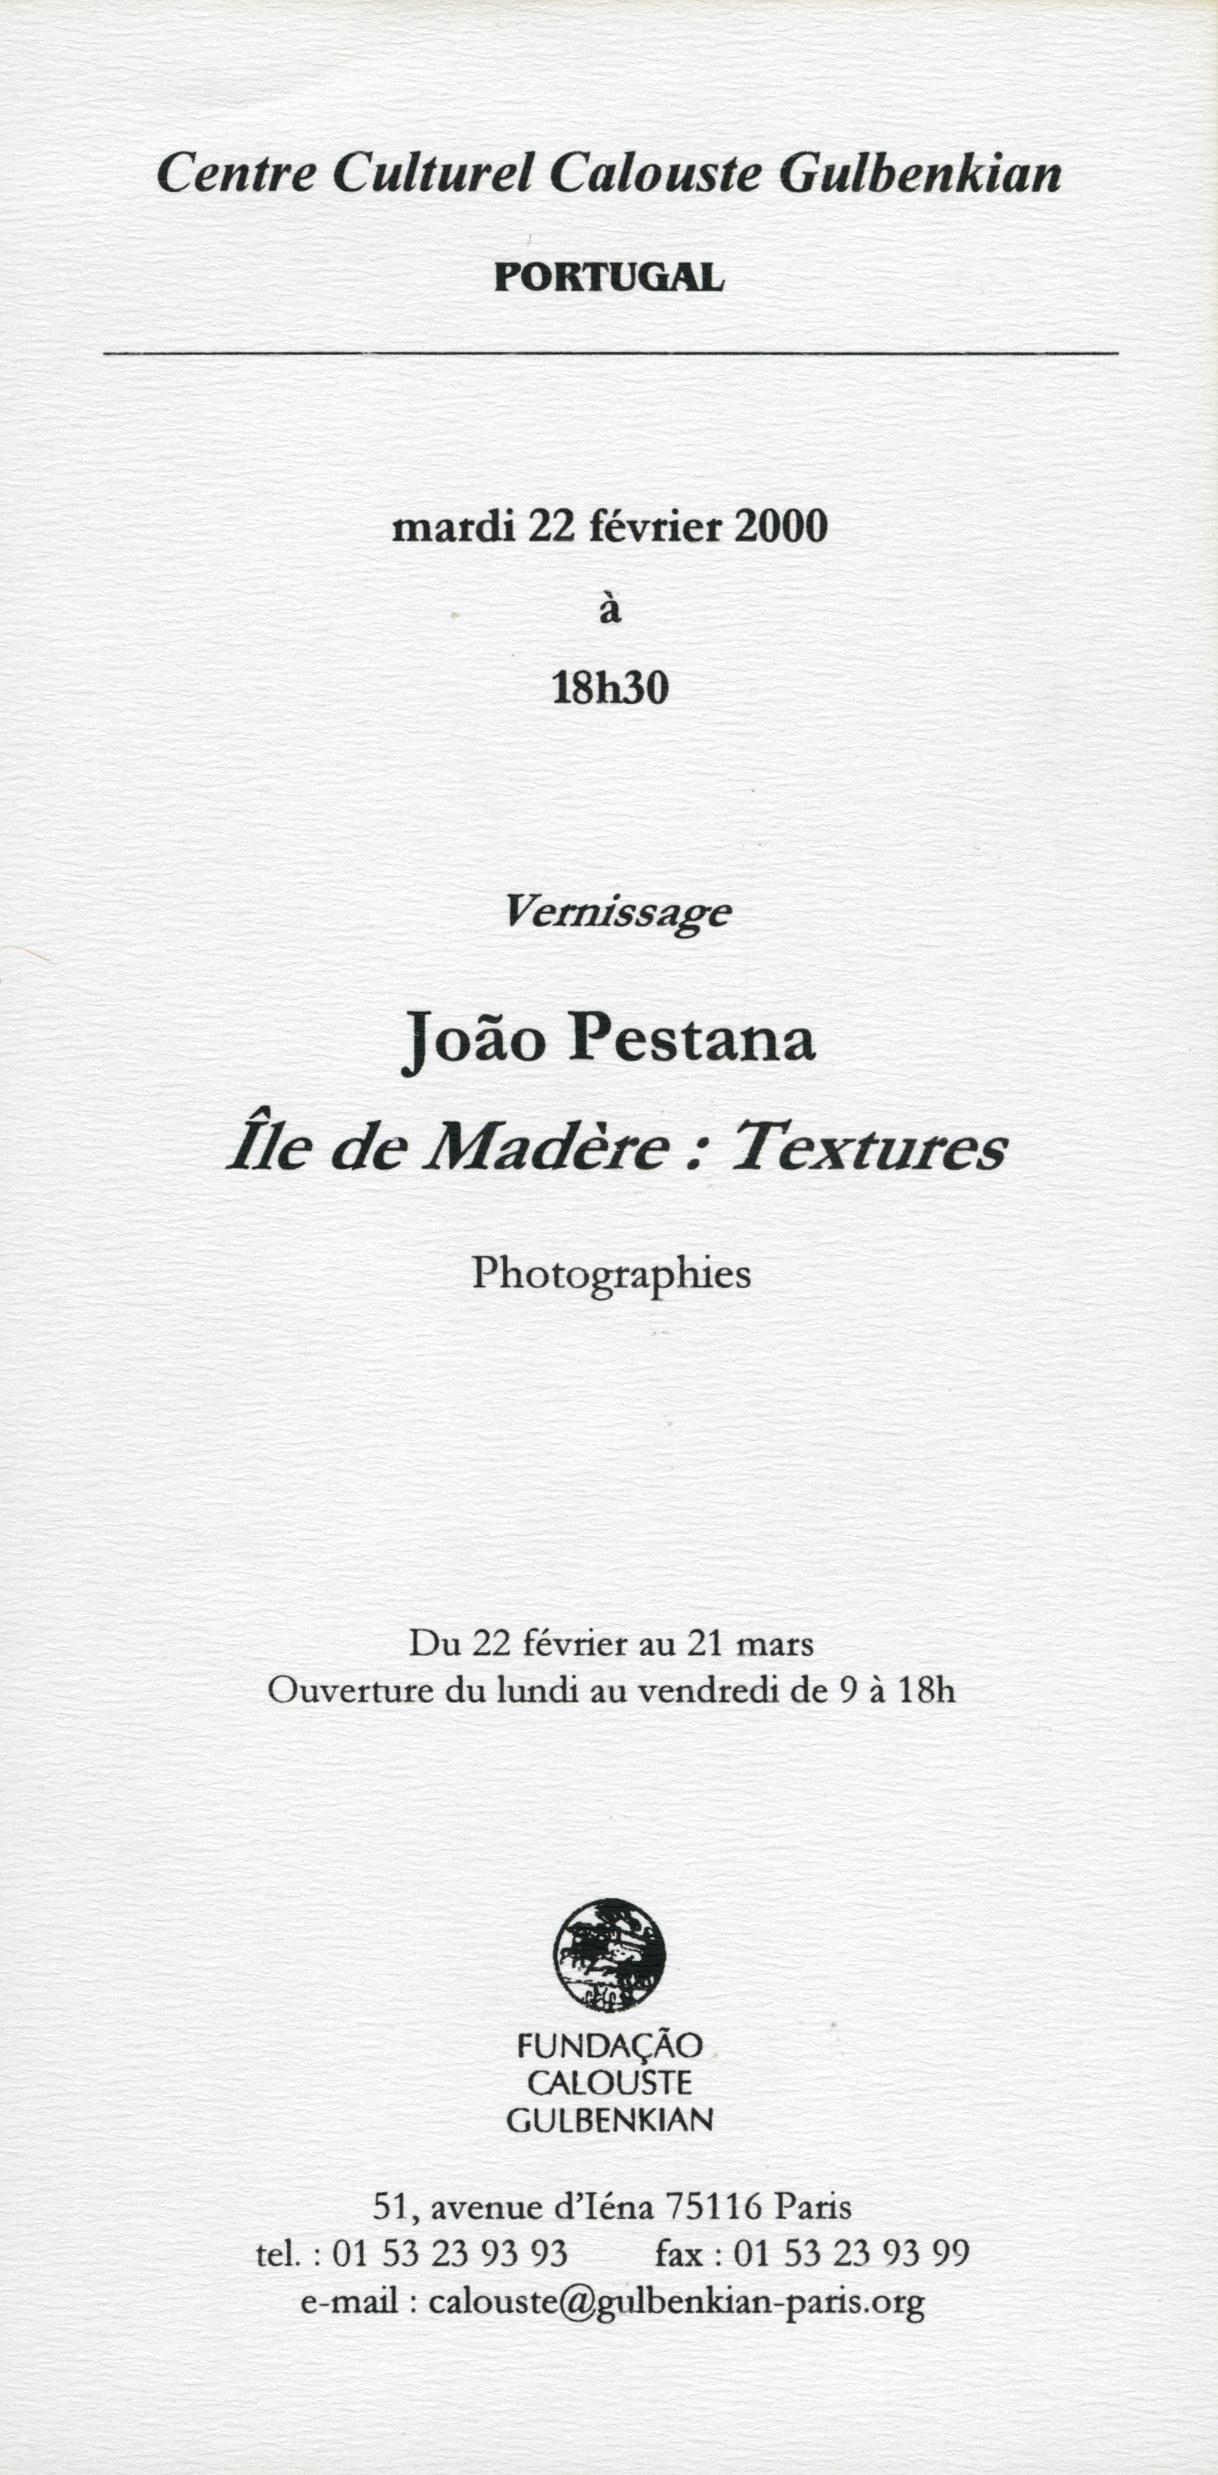 João Pestana. Île de Madère. Textures